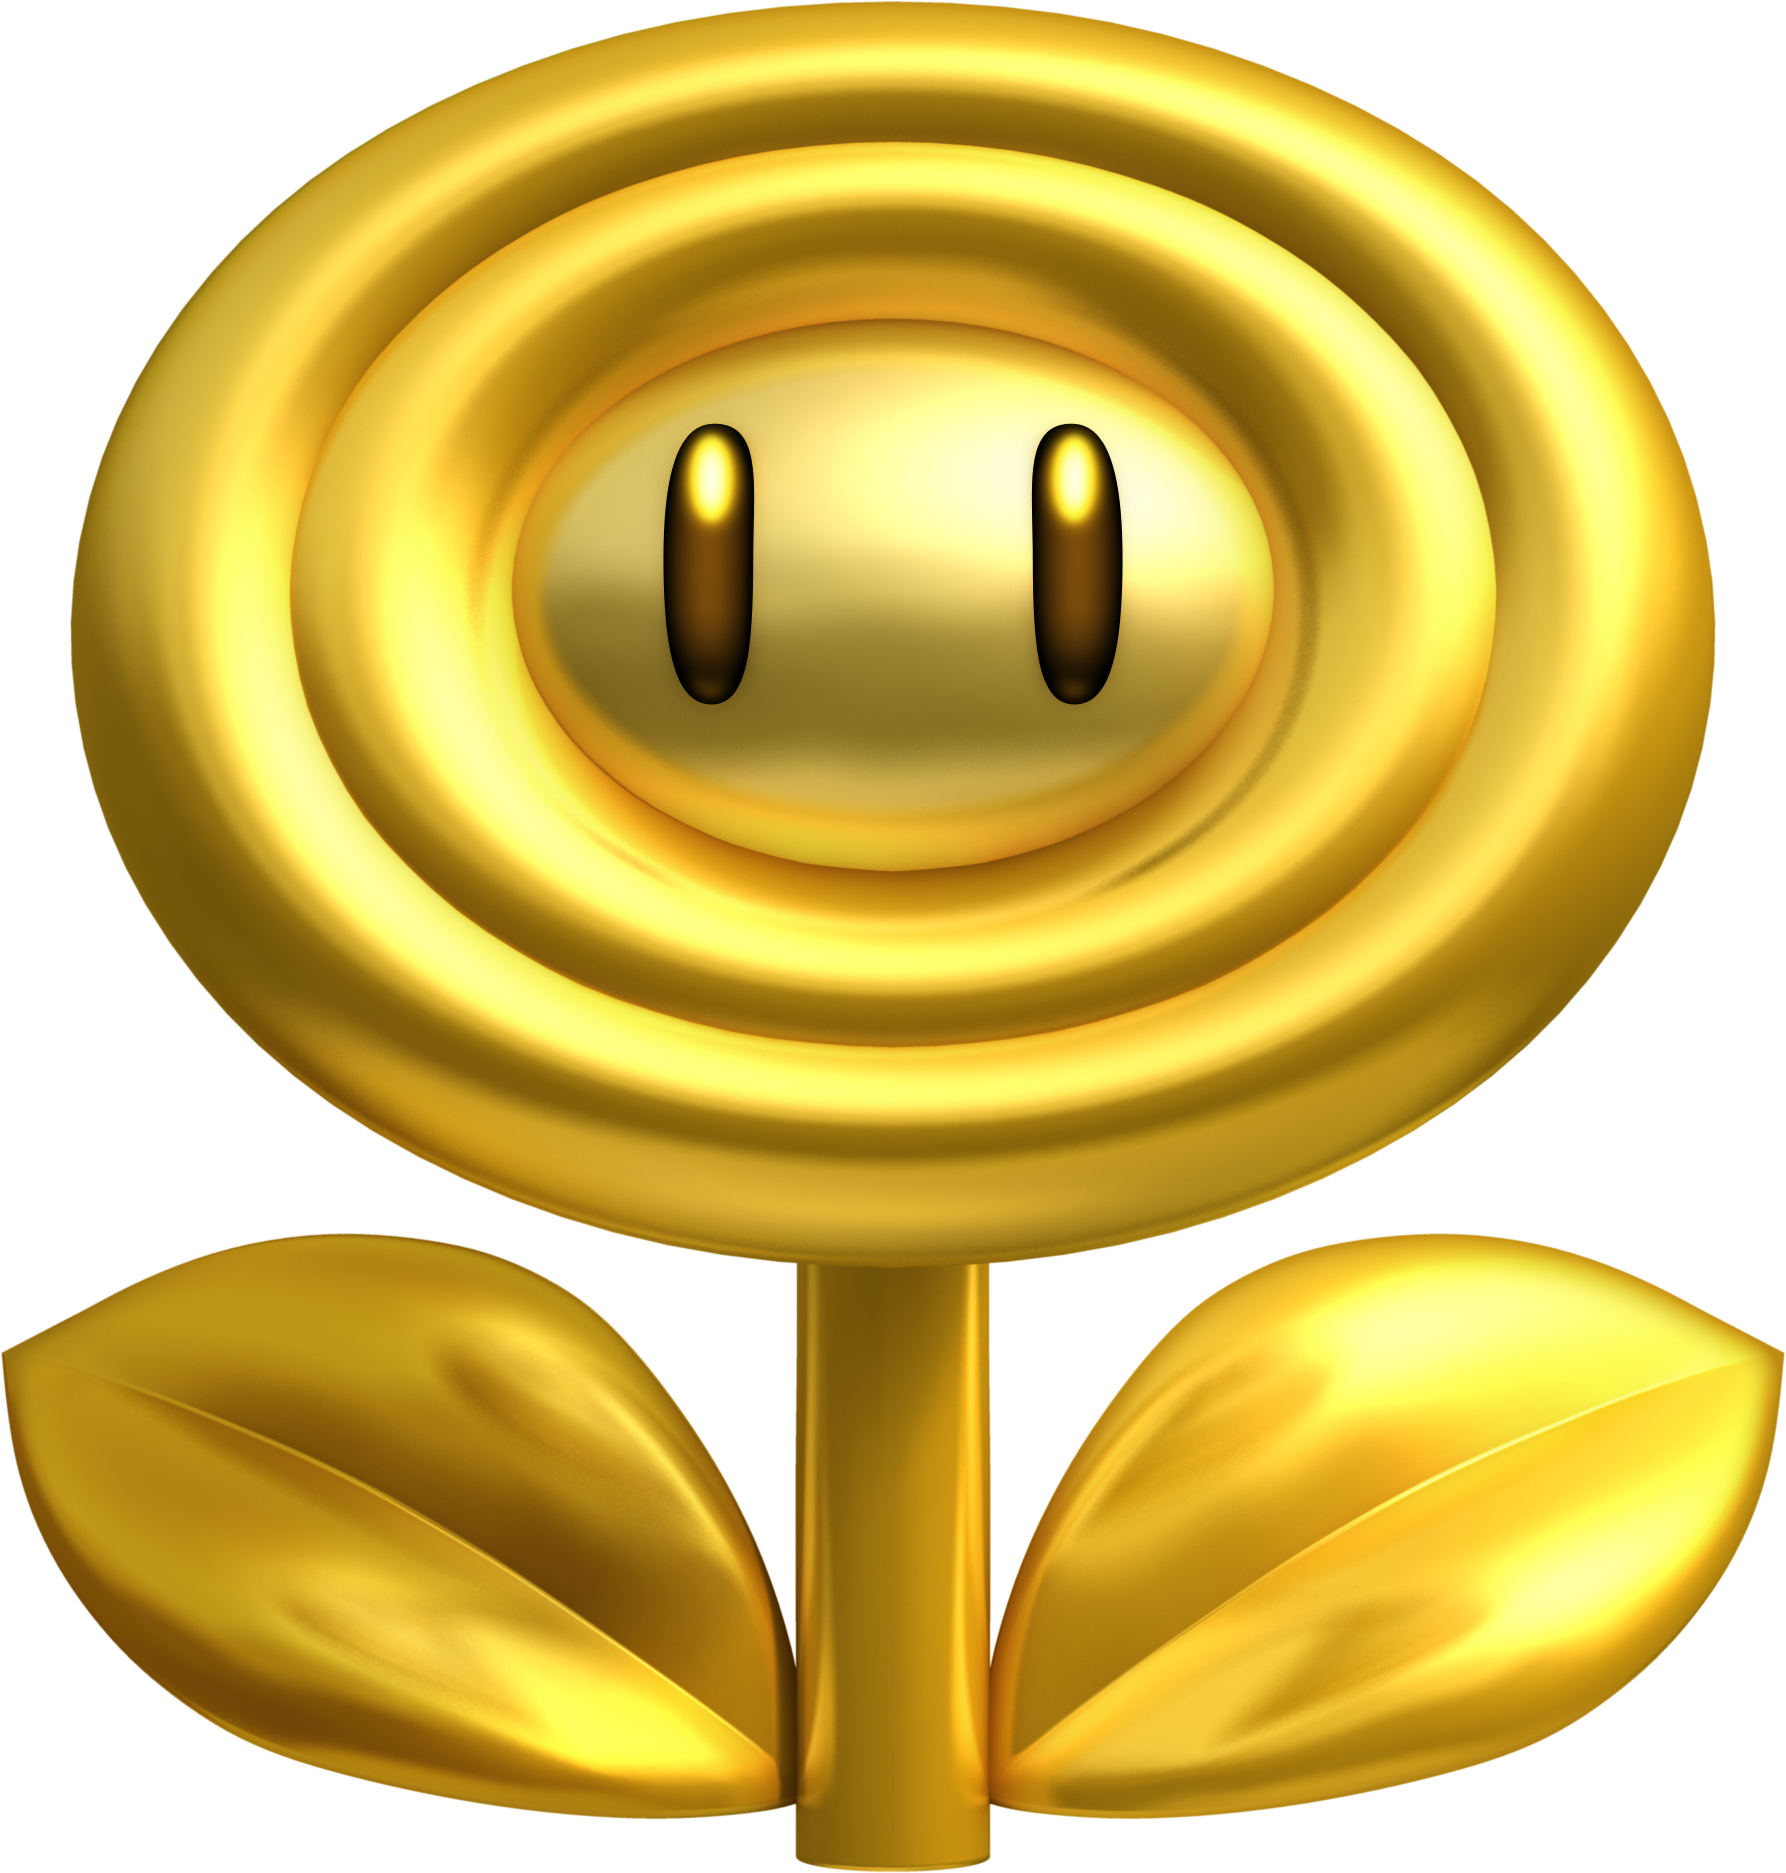 Ice Ball - Super Mario Wiki, the Mario encyclopedia